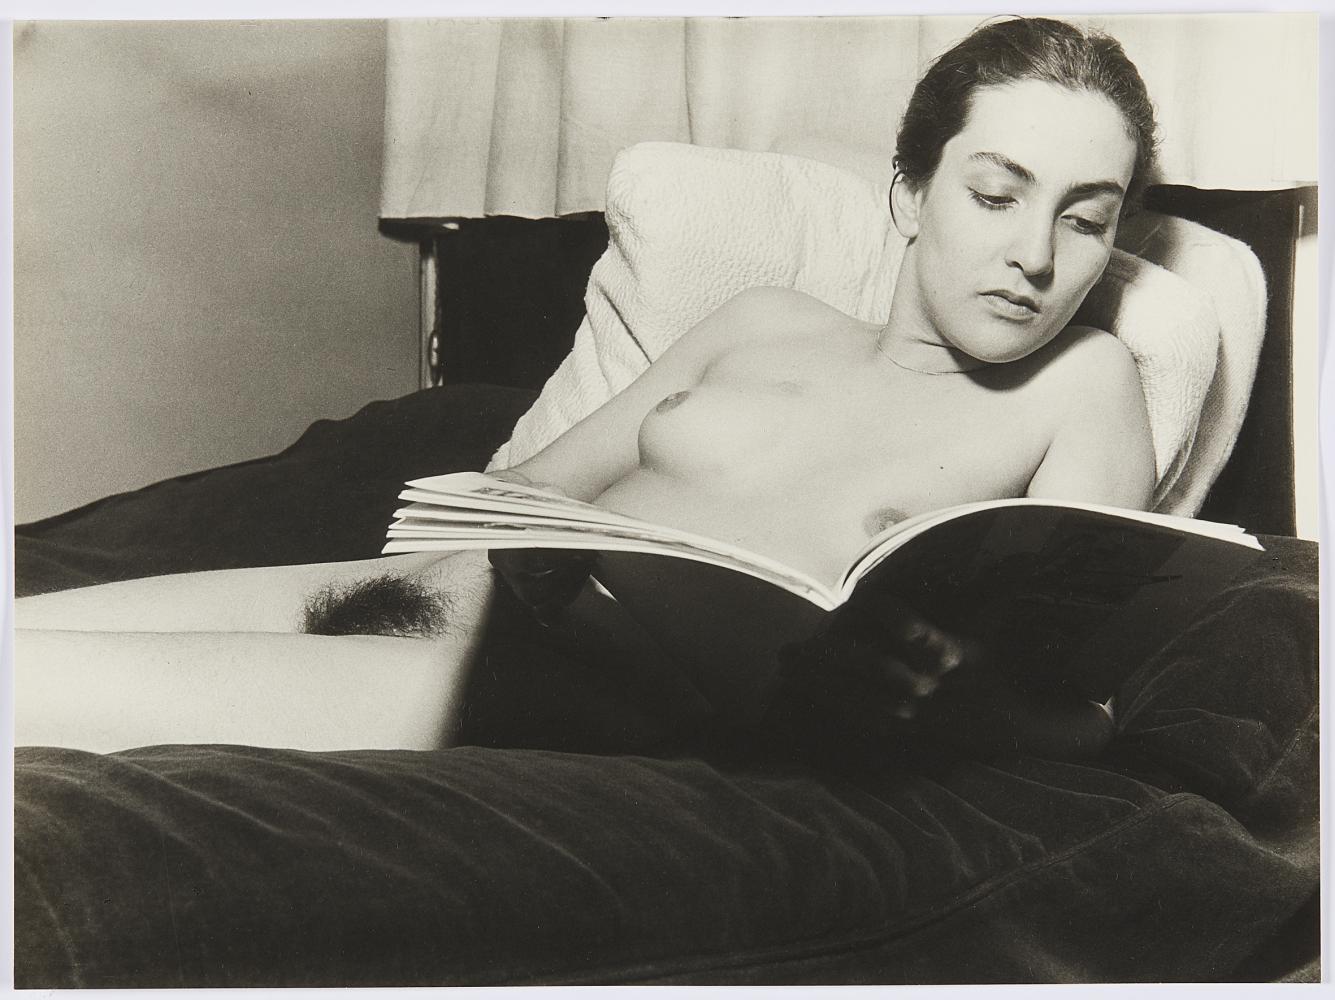 Galerie Linn Lühn: Man Ray, Porträt aus "Edition Femmes", 1933/81